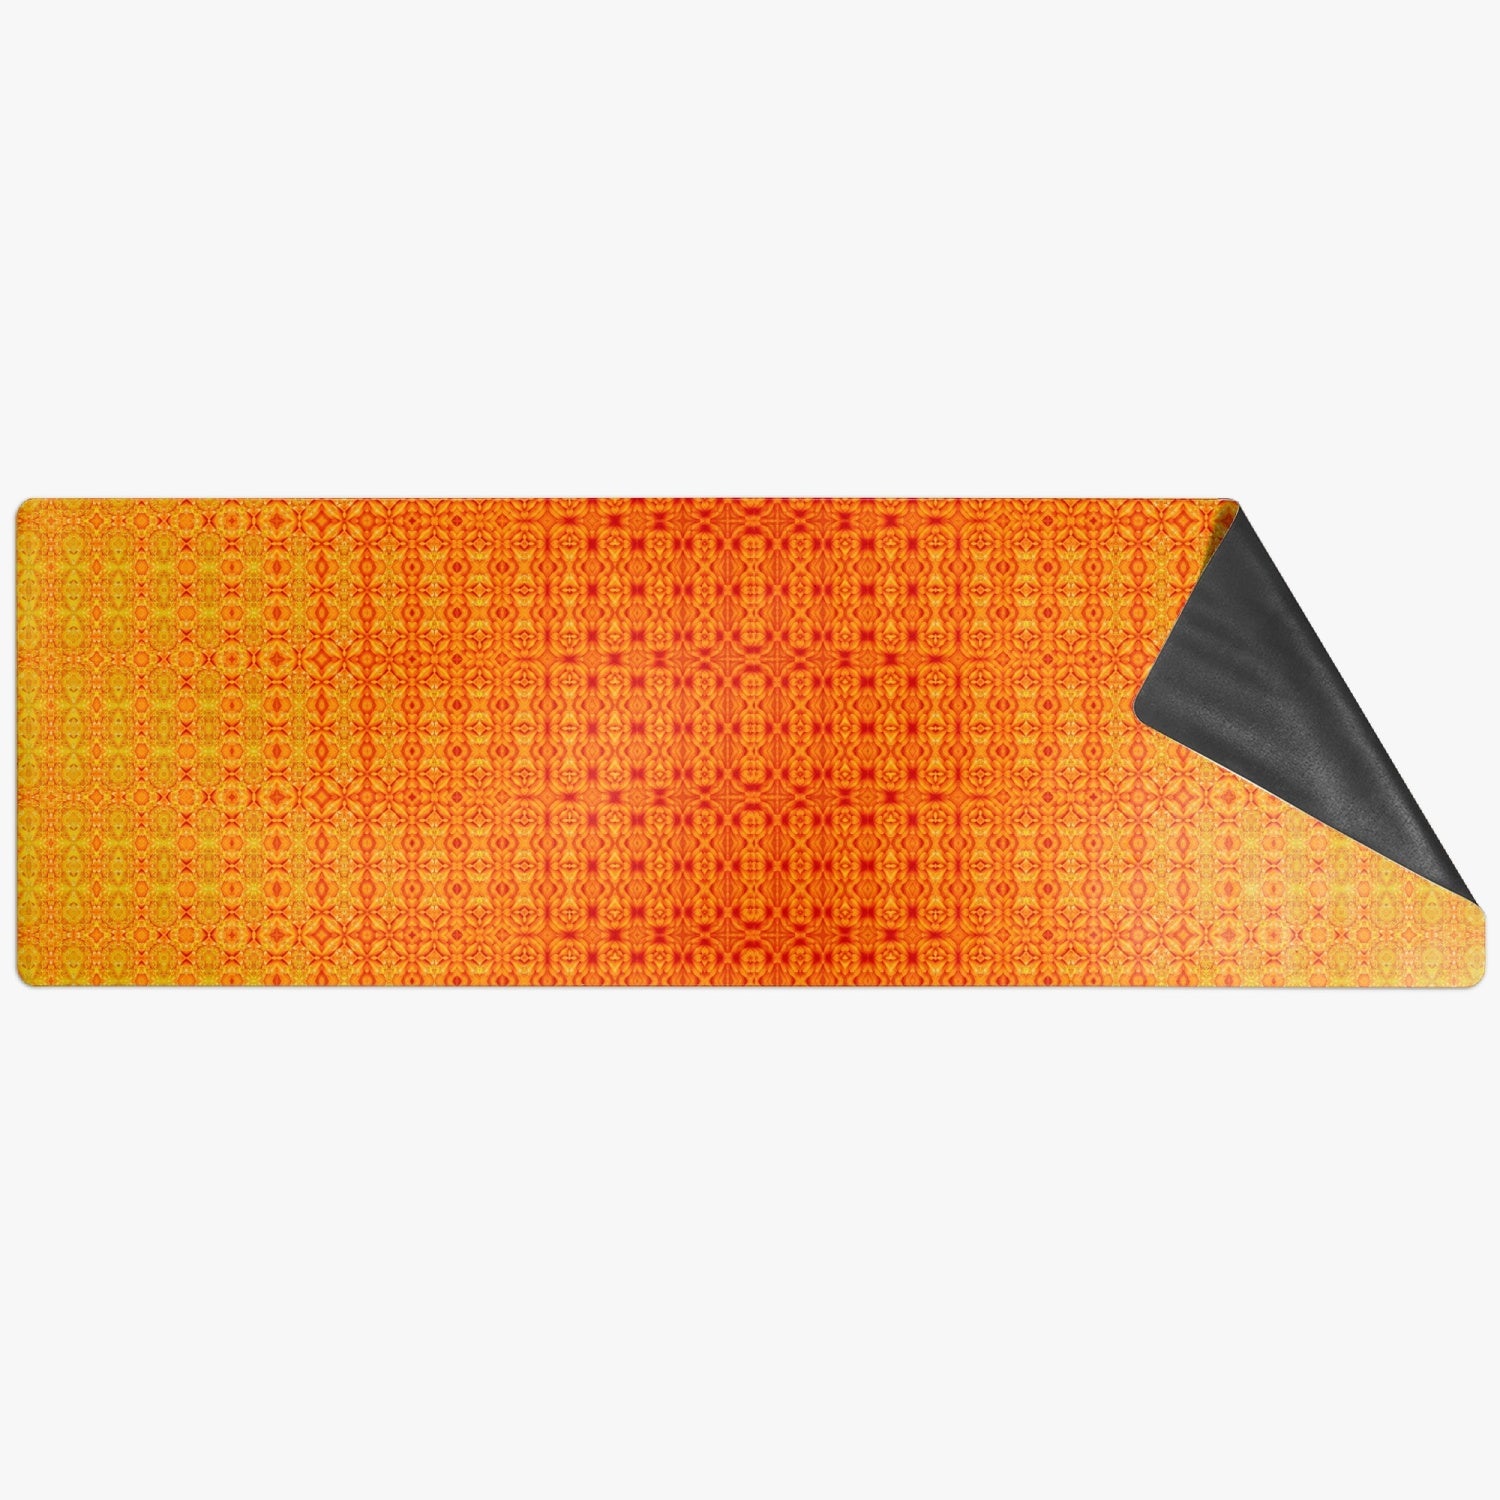 Solar Plexus Chacra Suede Anti-slip Yoga Mat, by Sensus Stduio Design